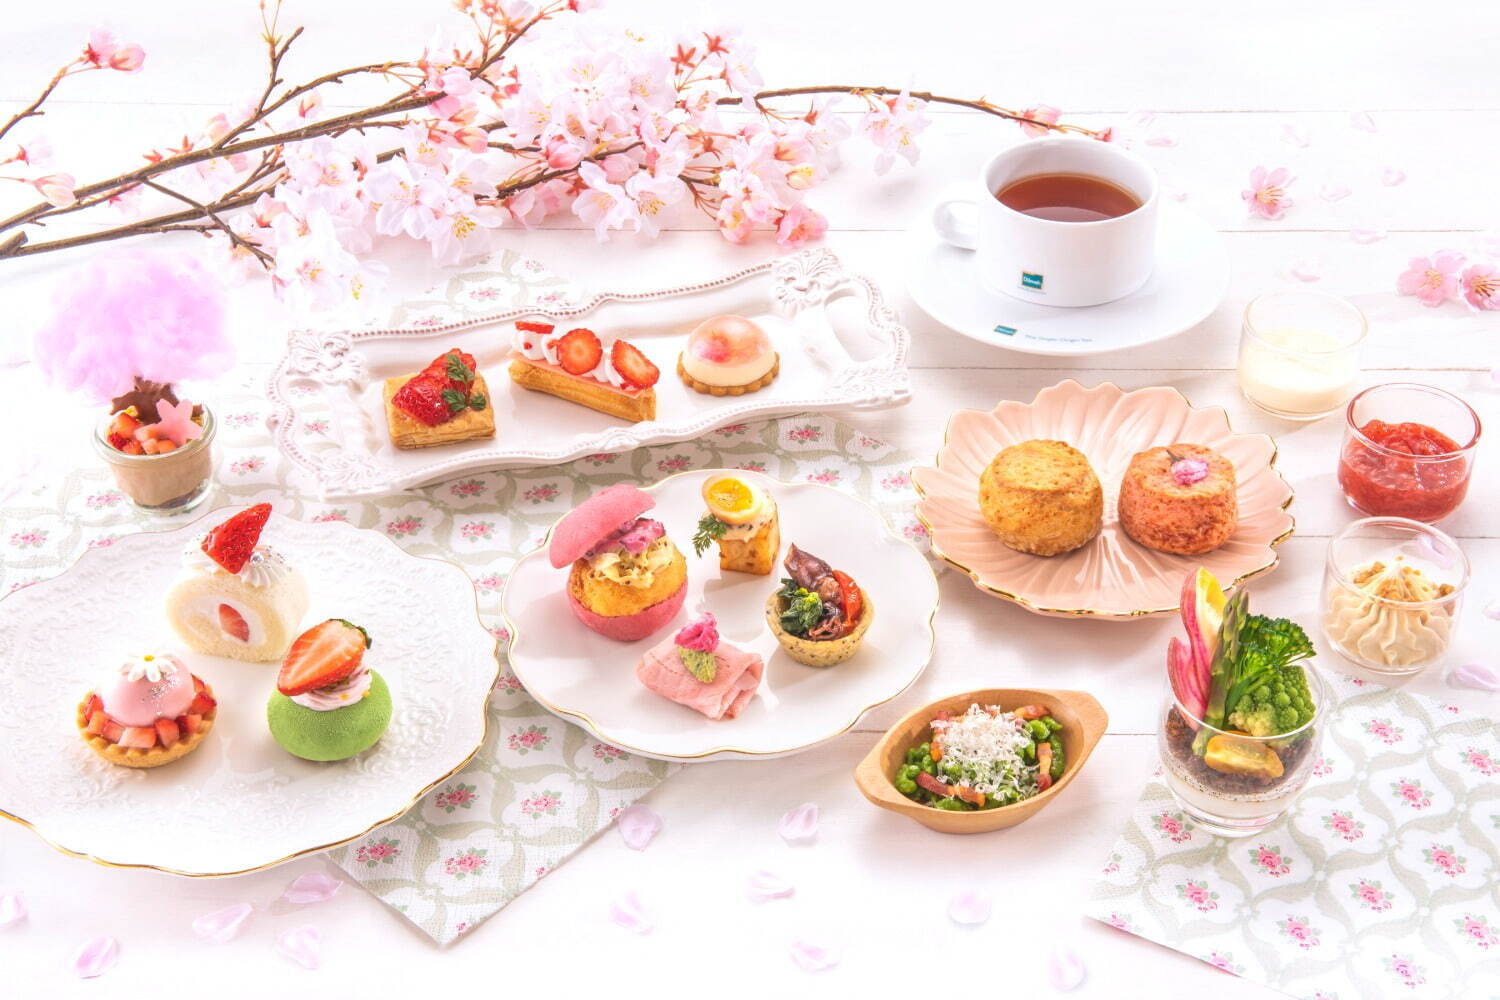 「桜×ストロベリーアフタヌーンティー」5,200円